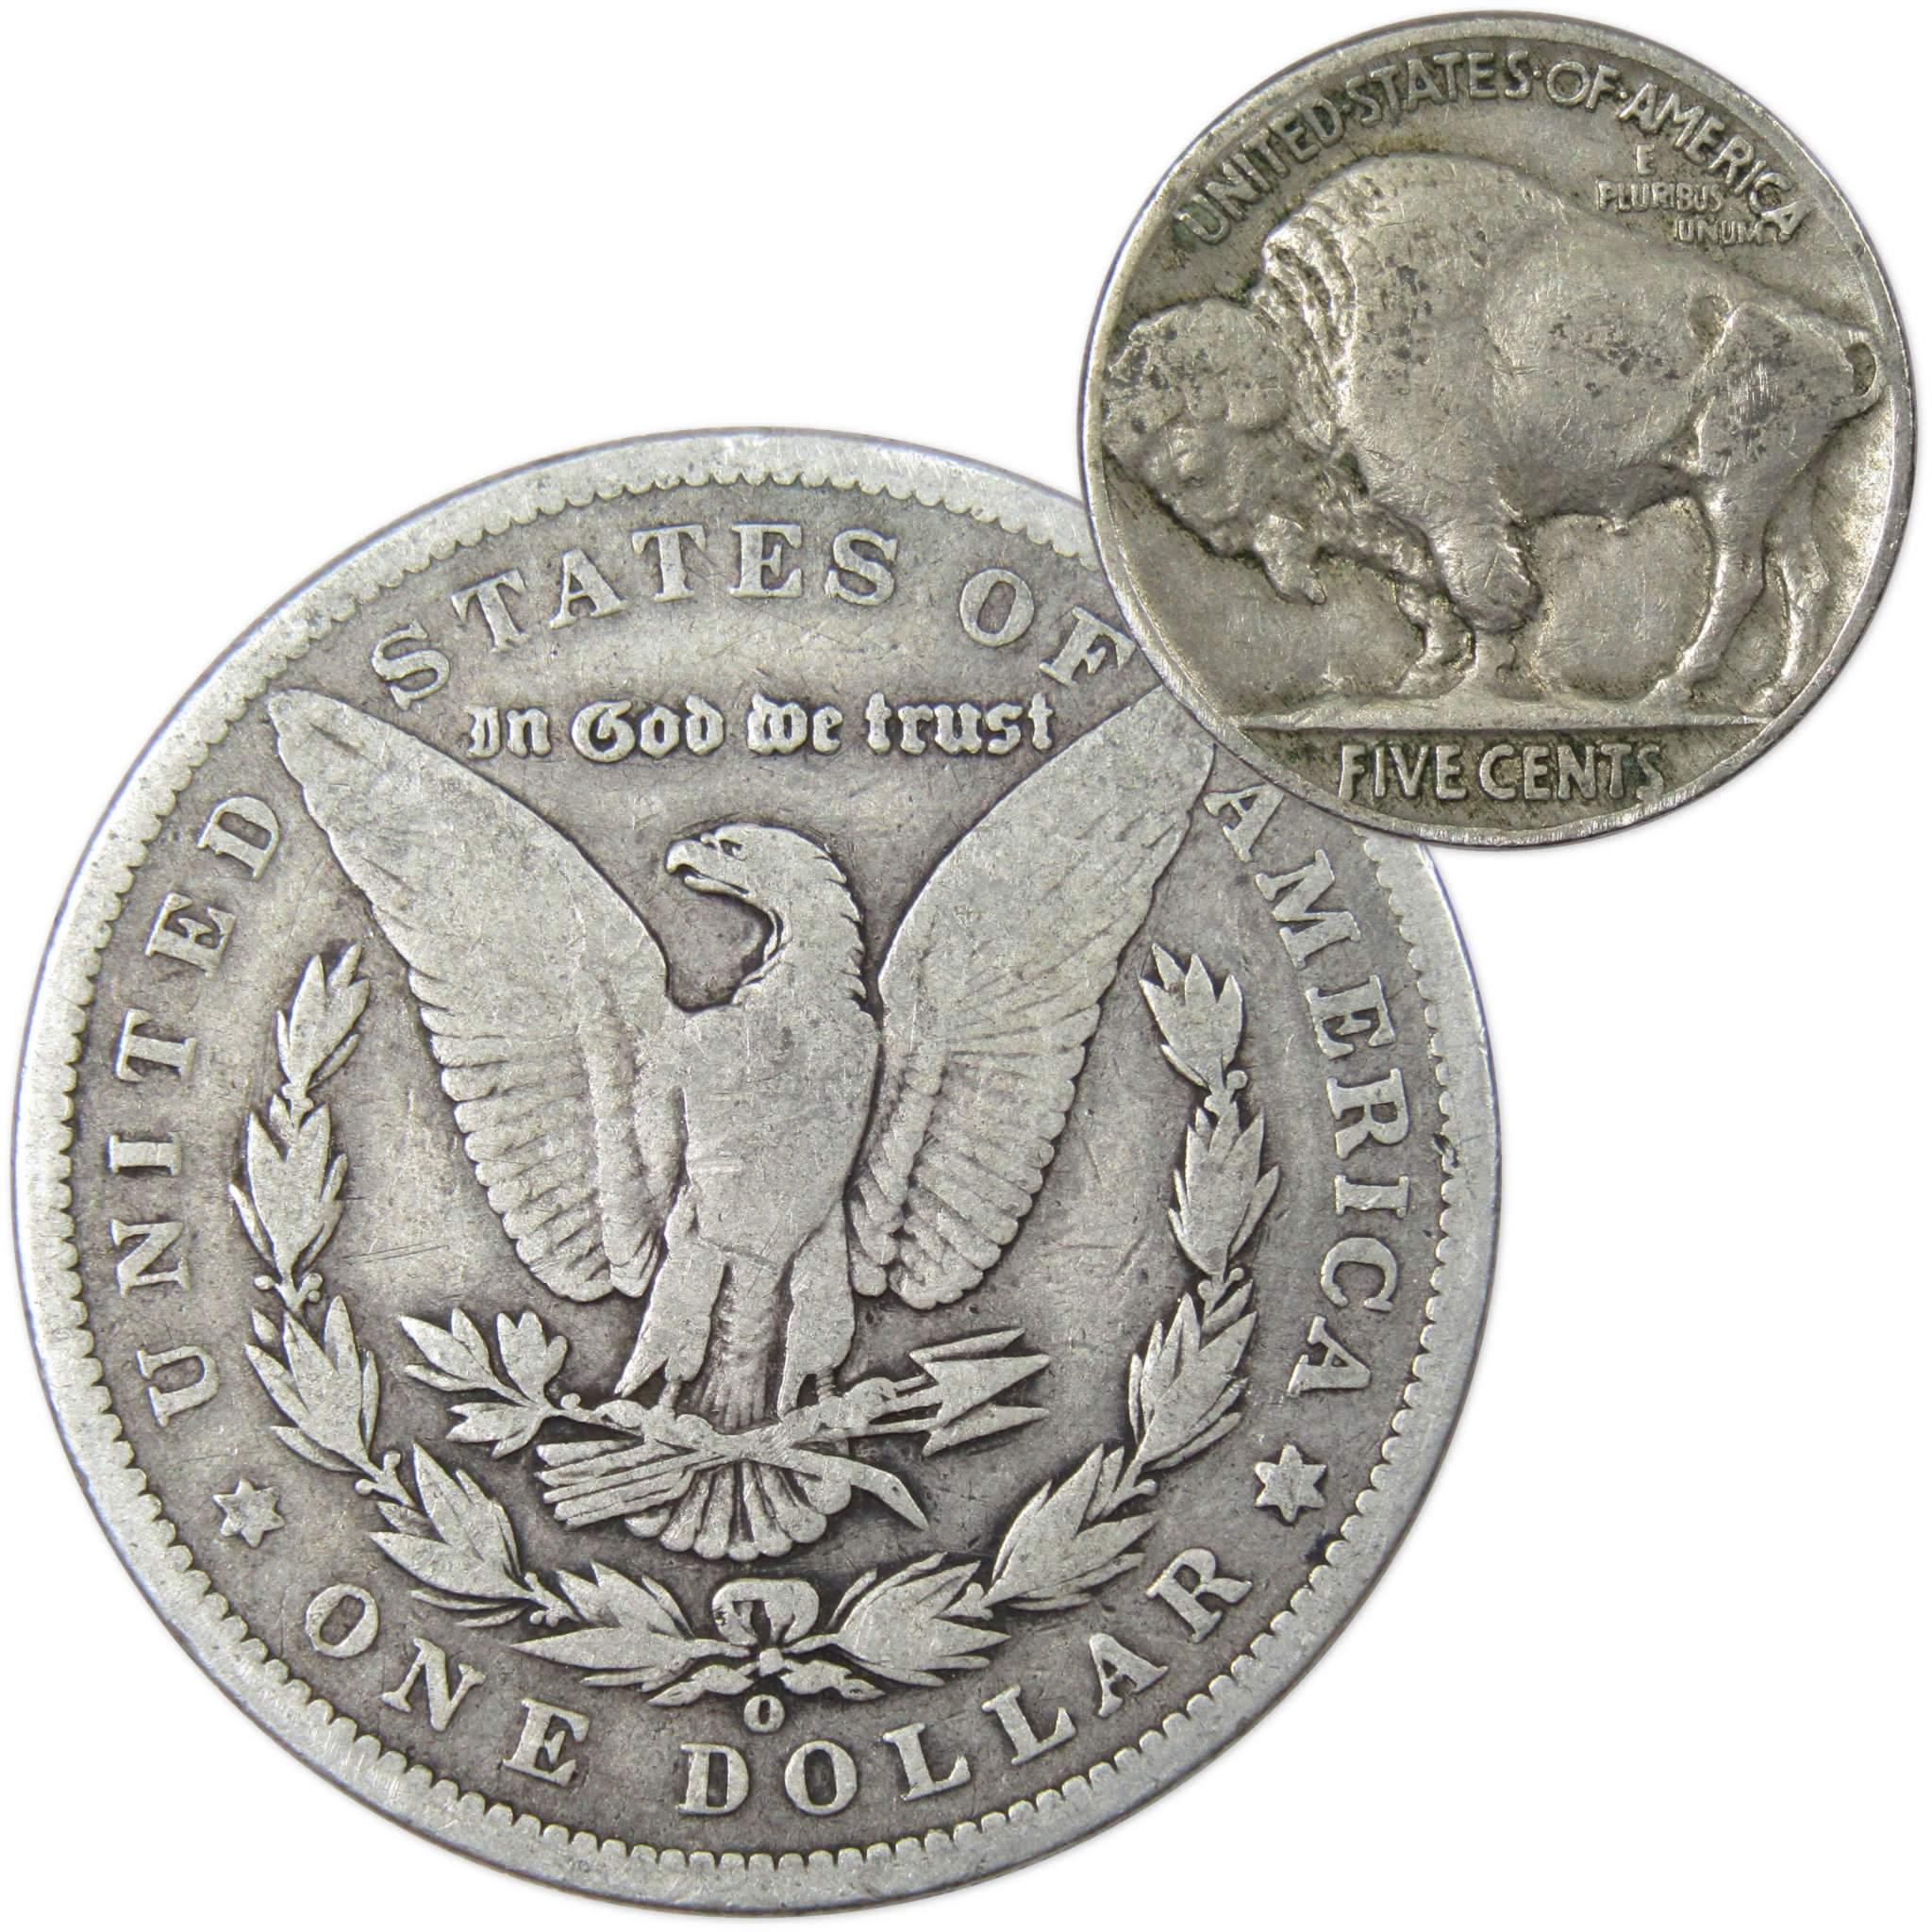 1899 O Morgan Dollar VG Very Good 90% Silver with 1934 Buffalo Nickel F Fine - Morgan coin - Morgan silver dollar - Morgan silver dollar for sale - Profile Coins &amp; Collectibles